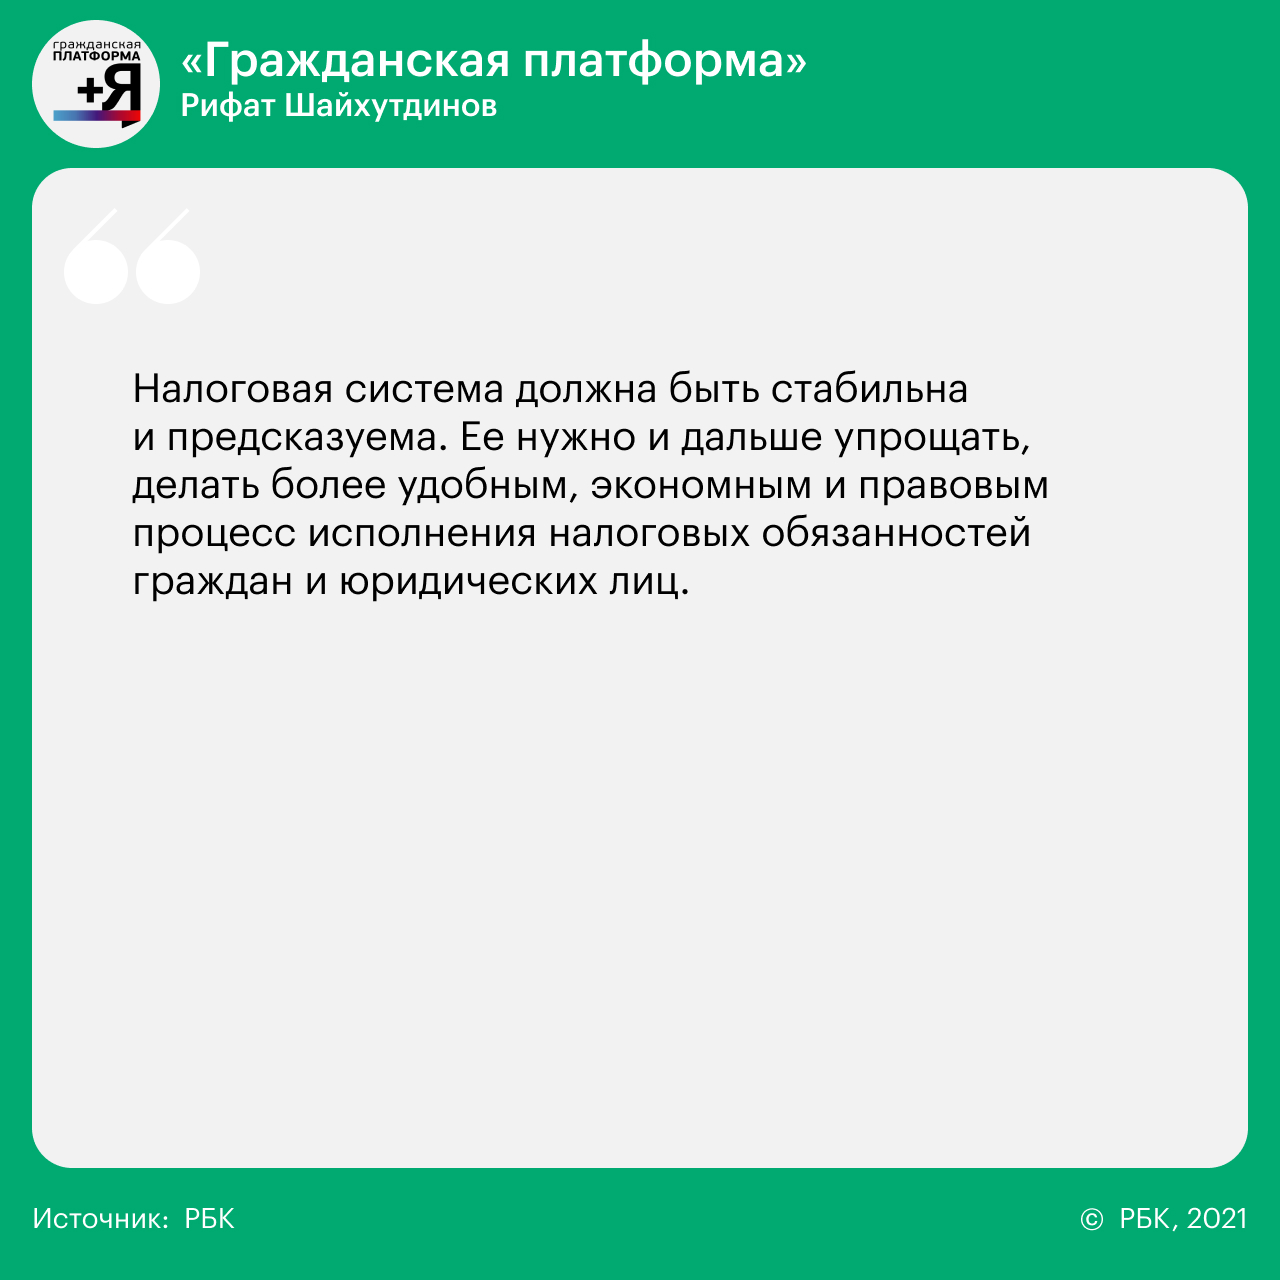 14 вопросов 14 партиям о реформах, Донбассе, Навальном и Ленине